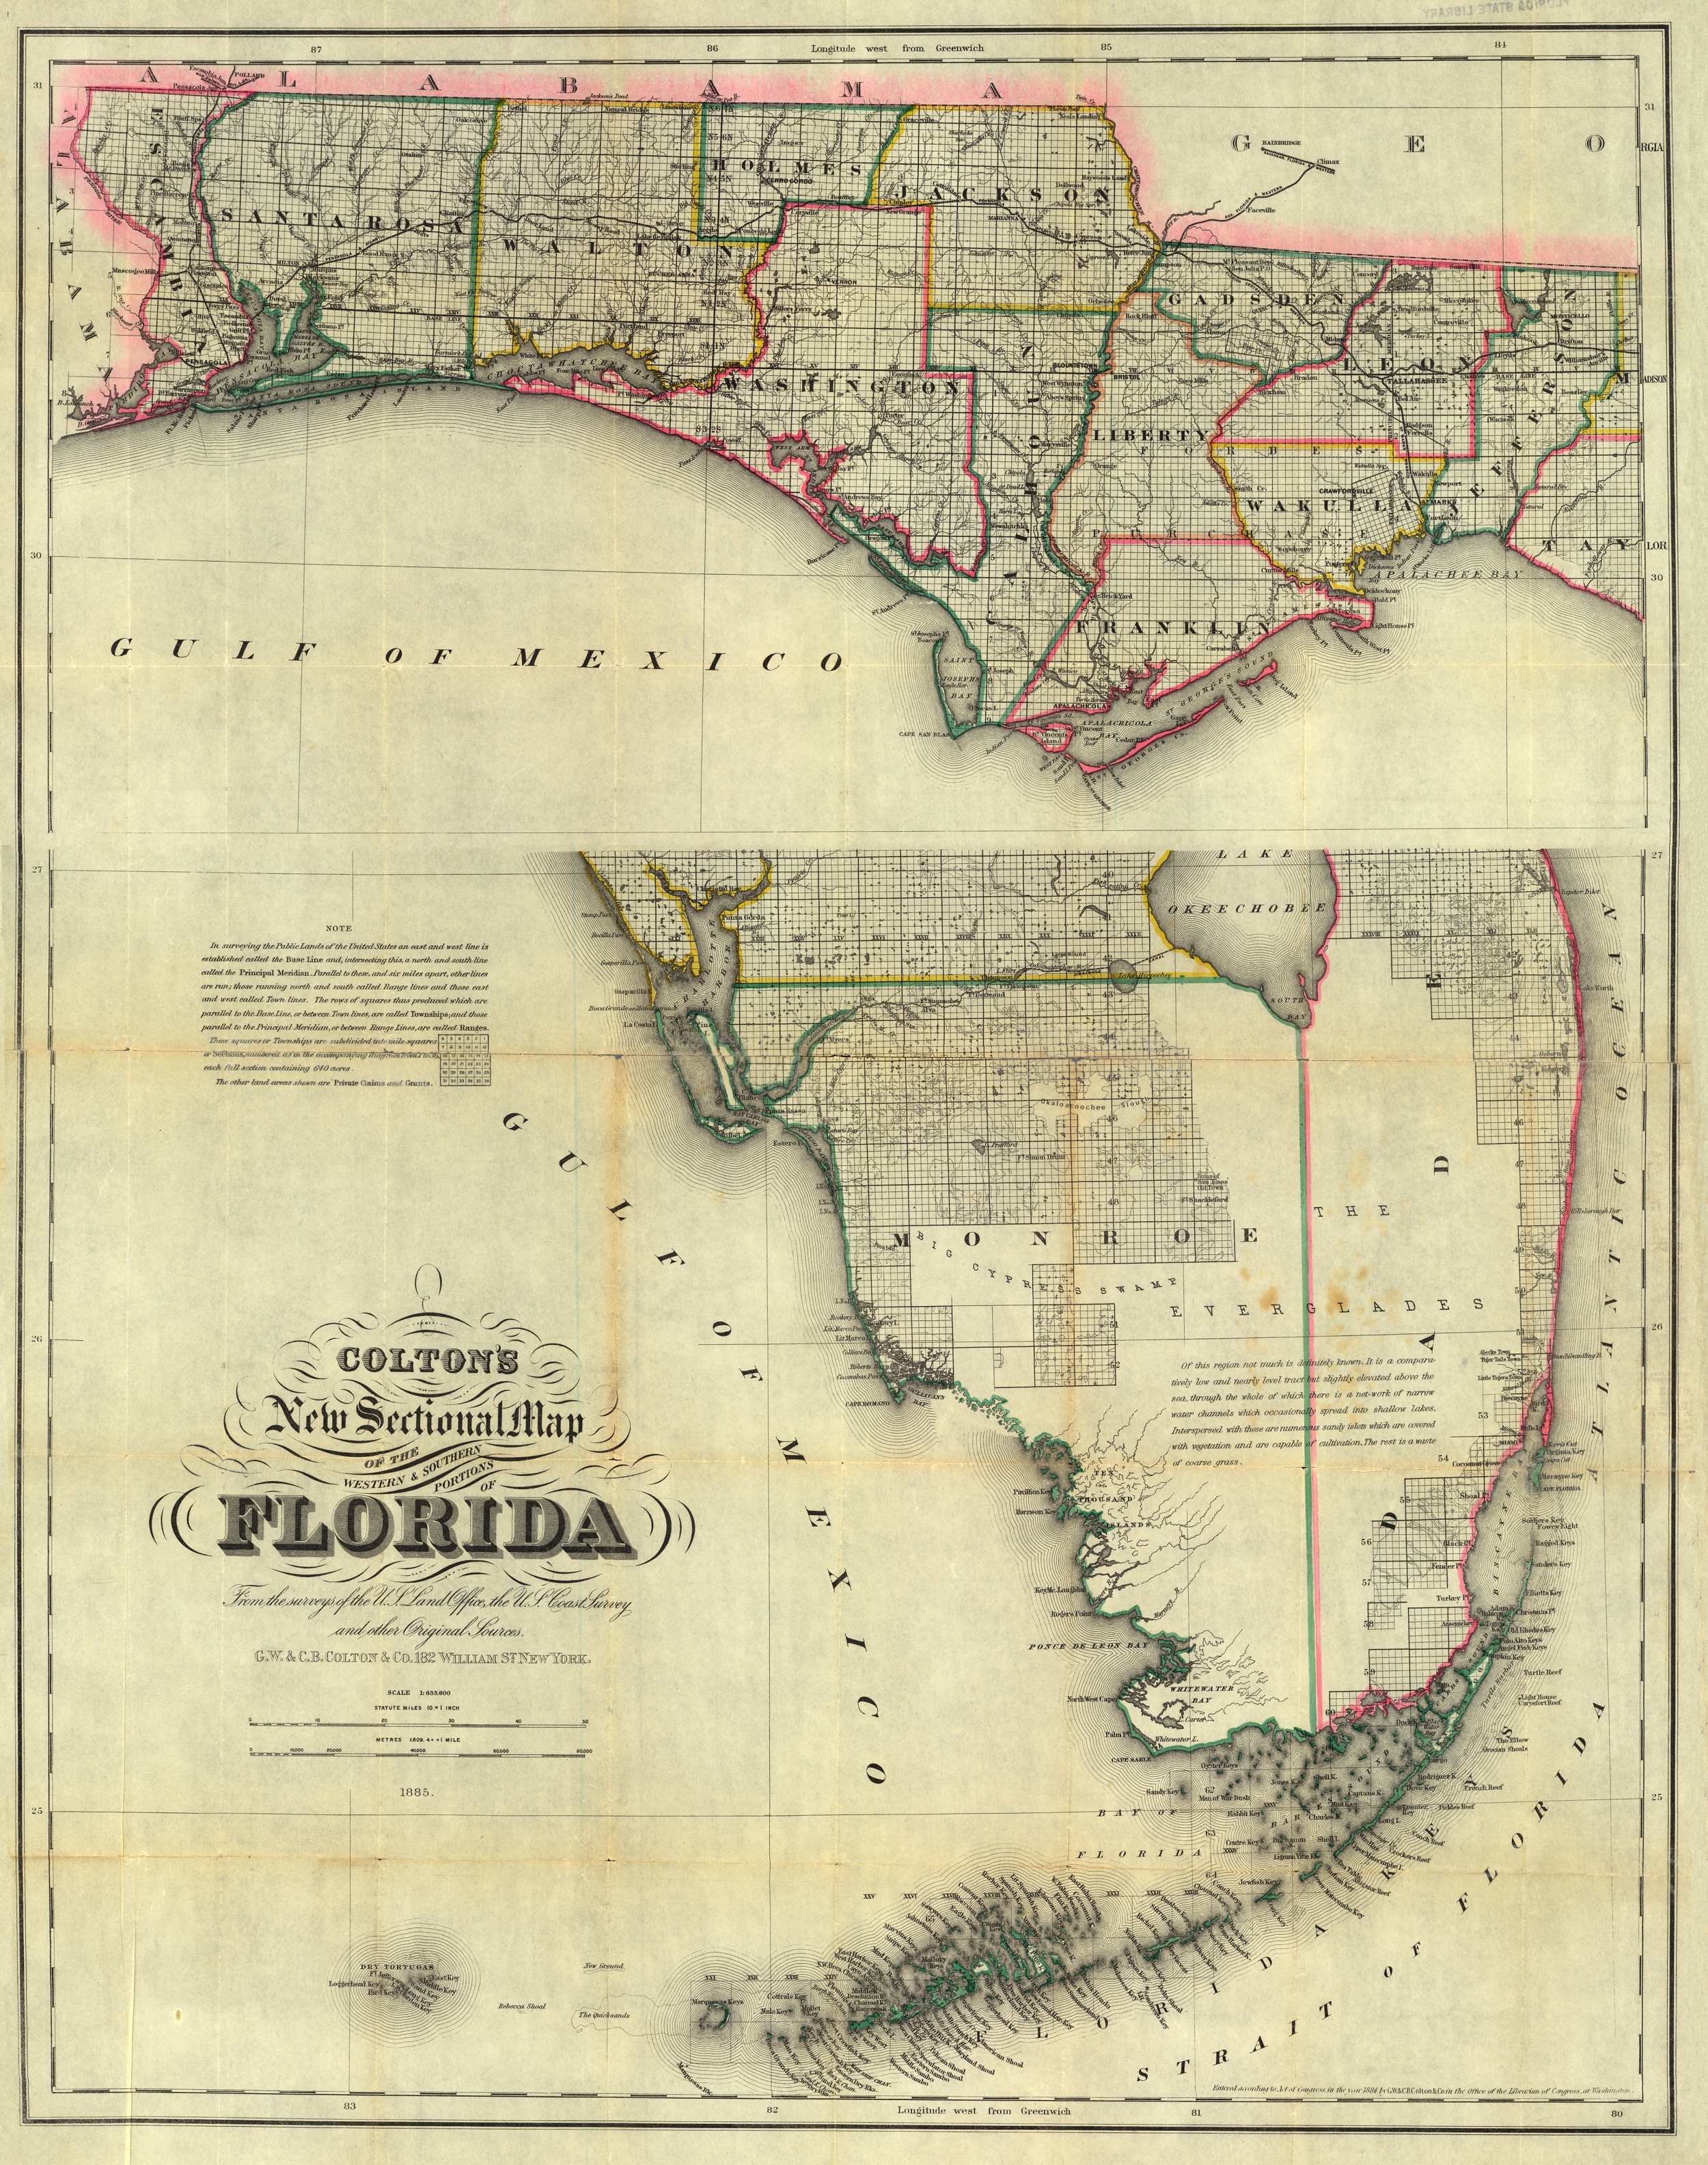 Colton's Florida, 1885 - West & South